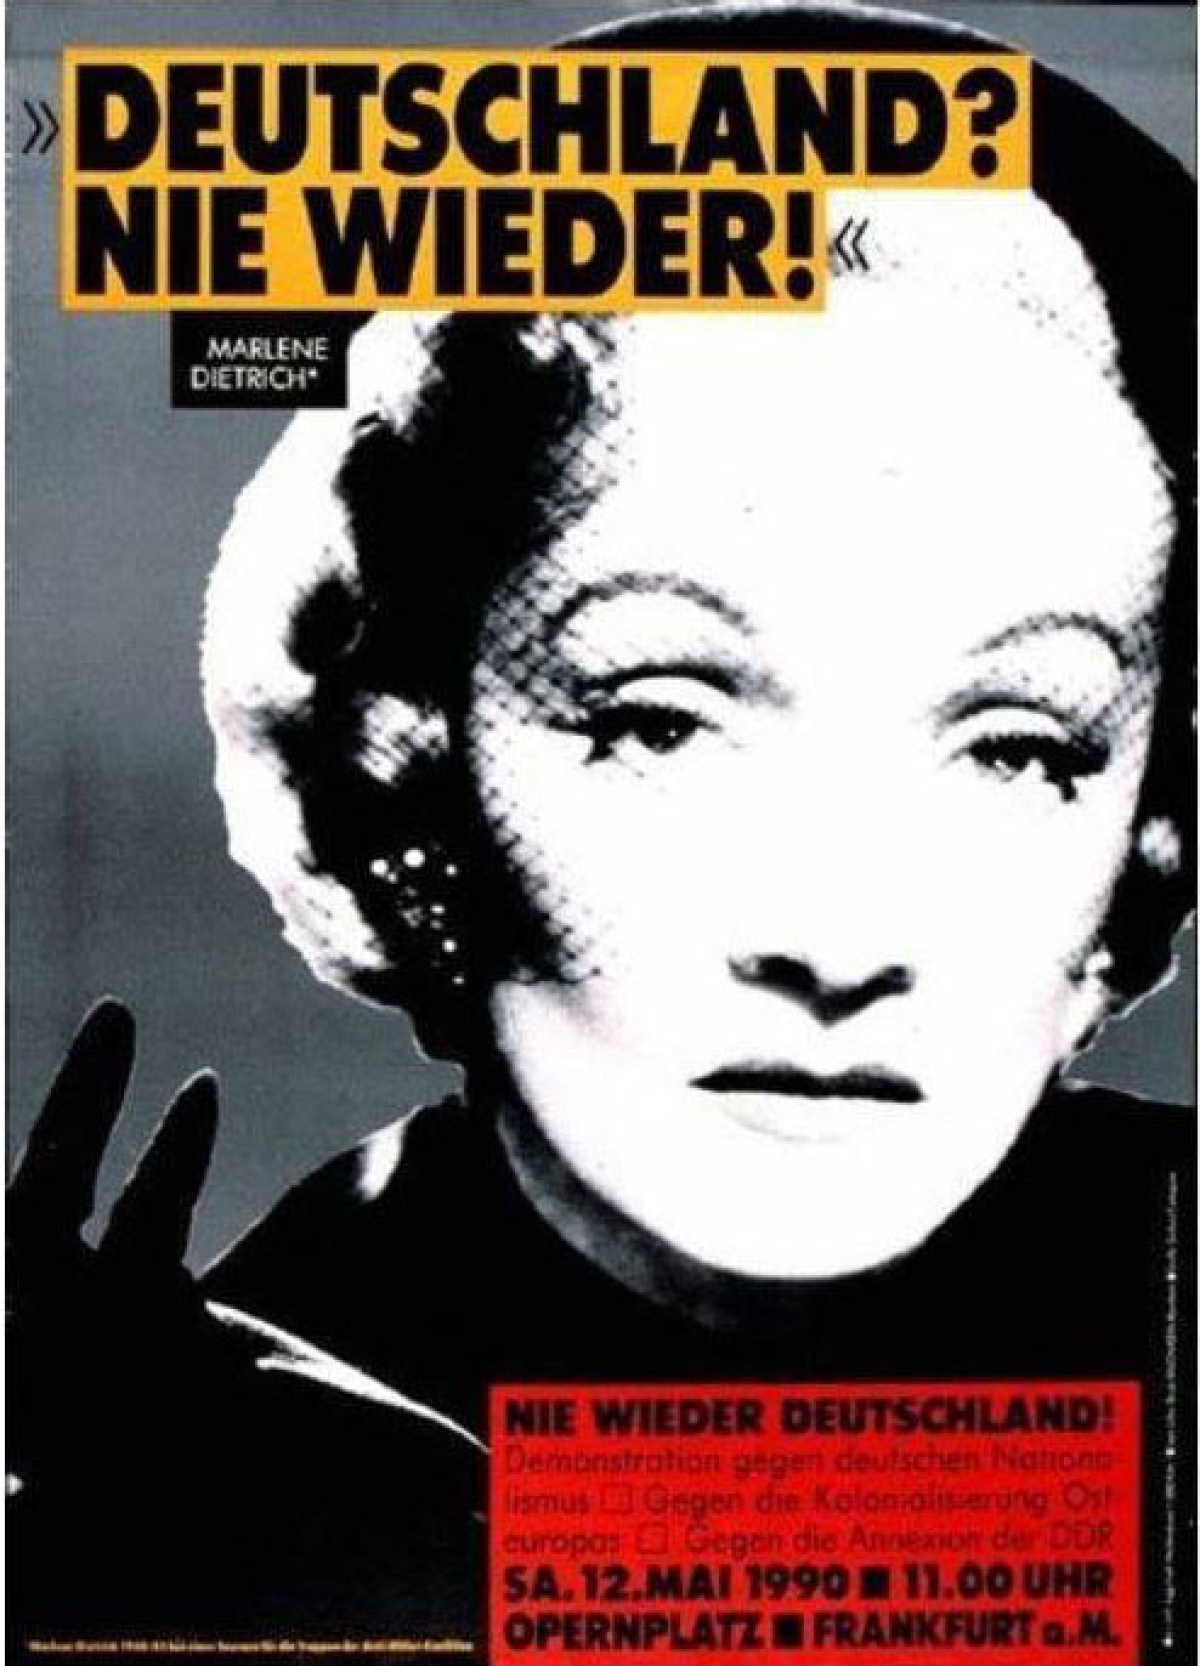 Marlene Dietrich »Deutschland? Nie wieder!«